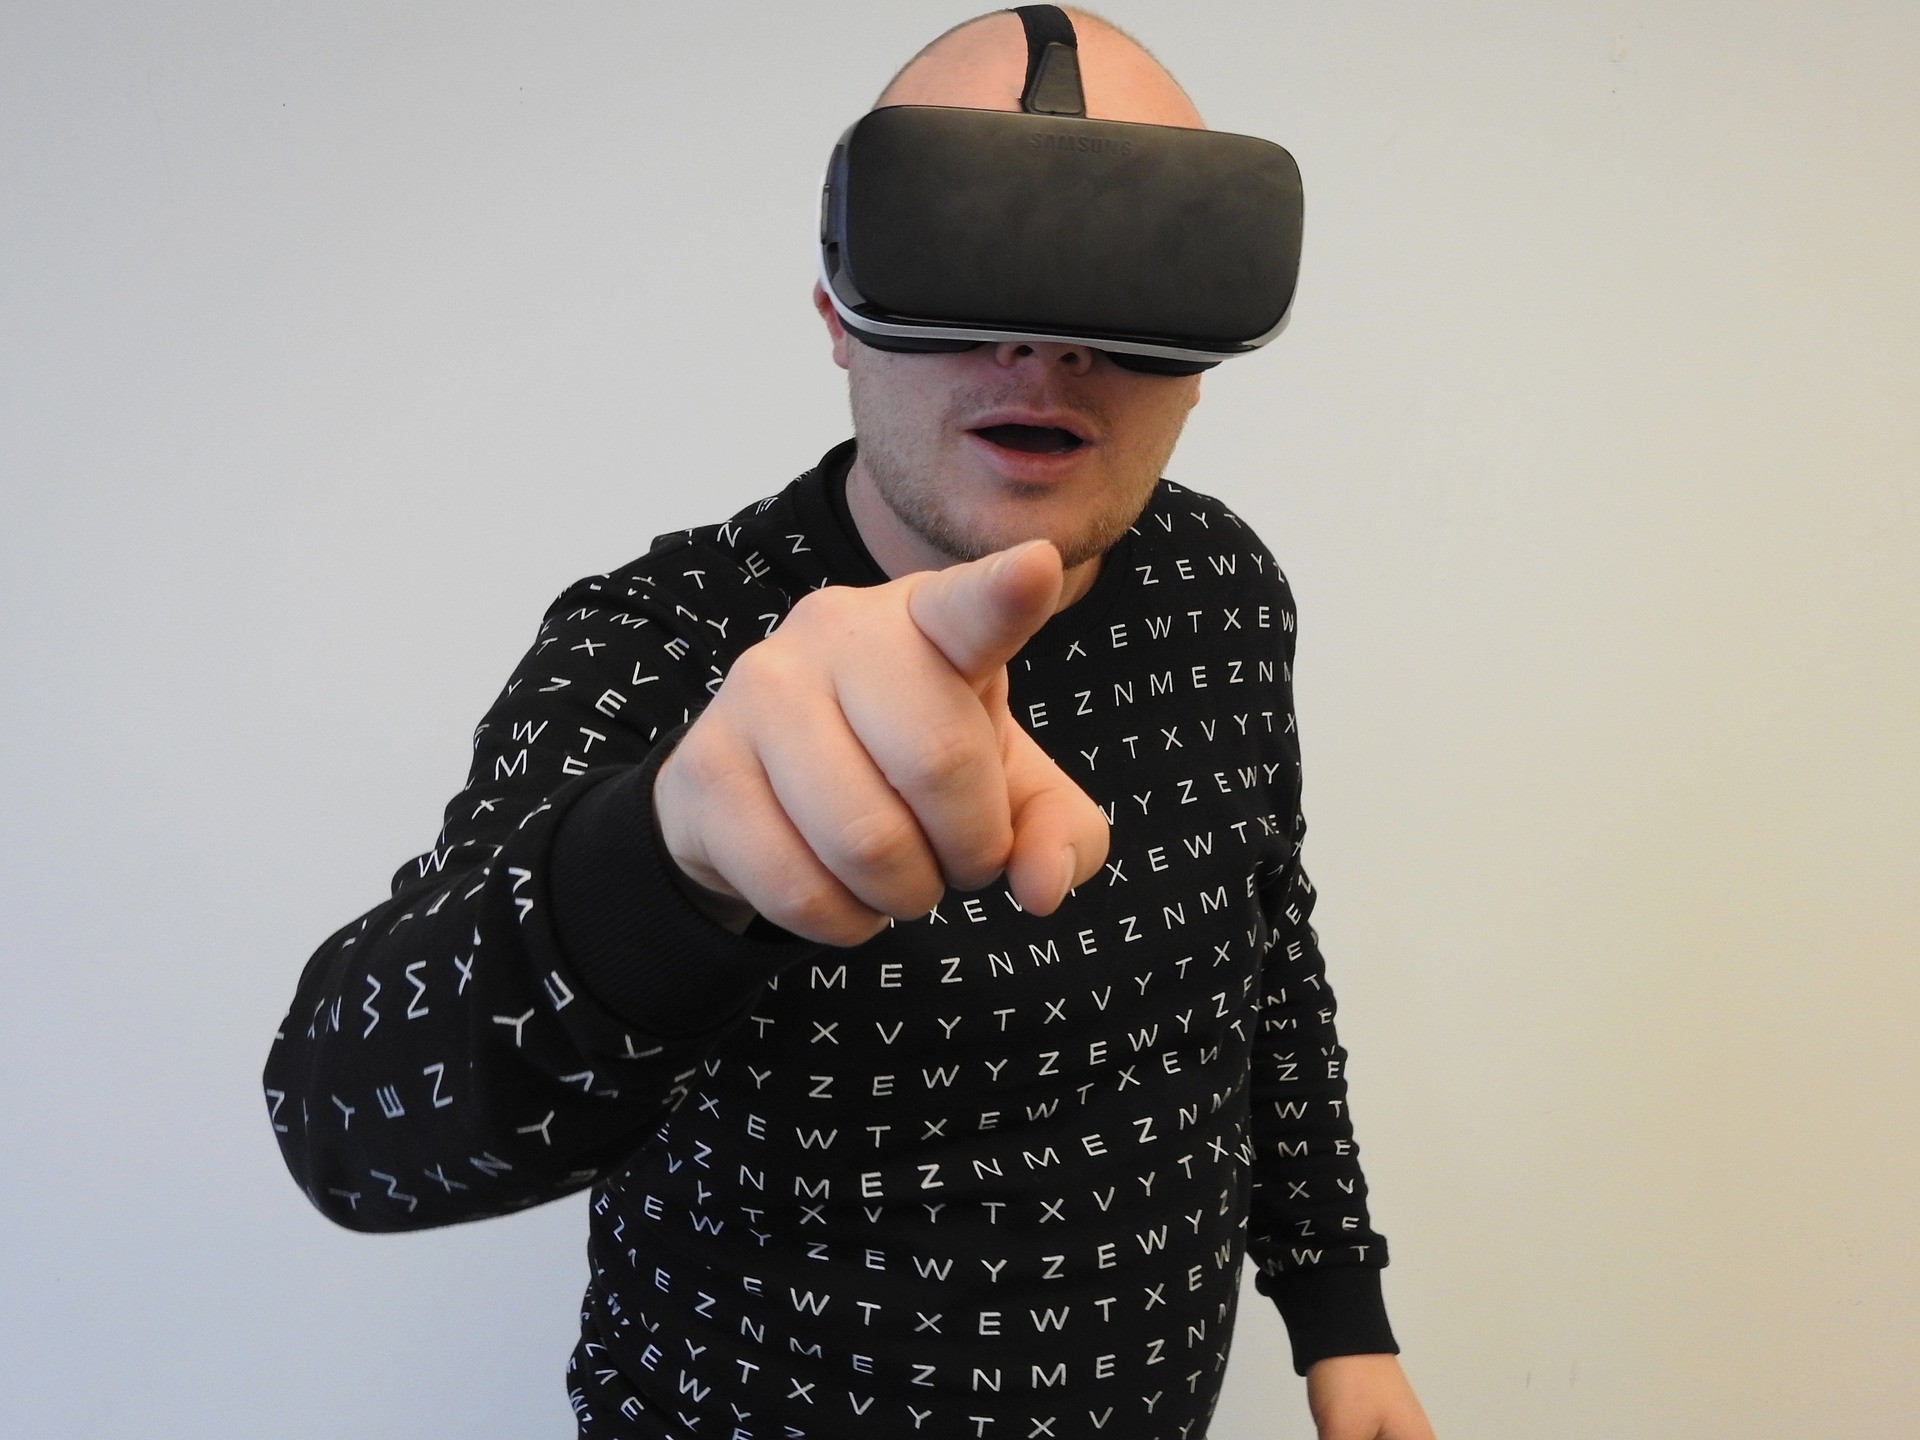 Очки виртуальной реальности